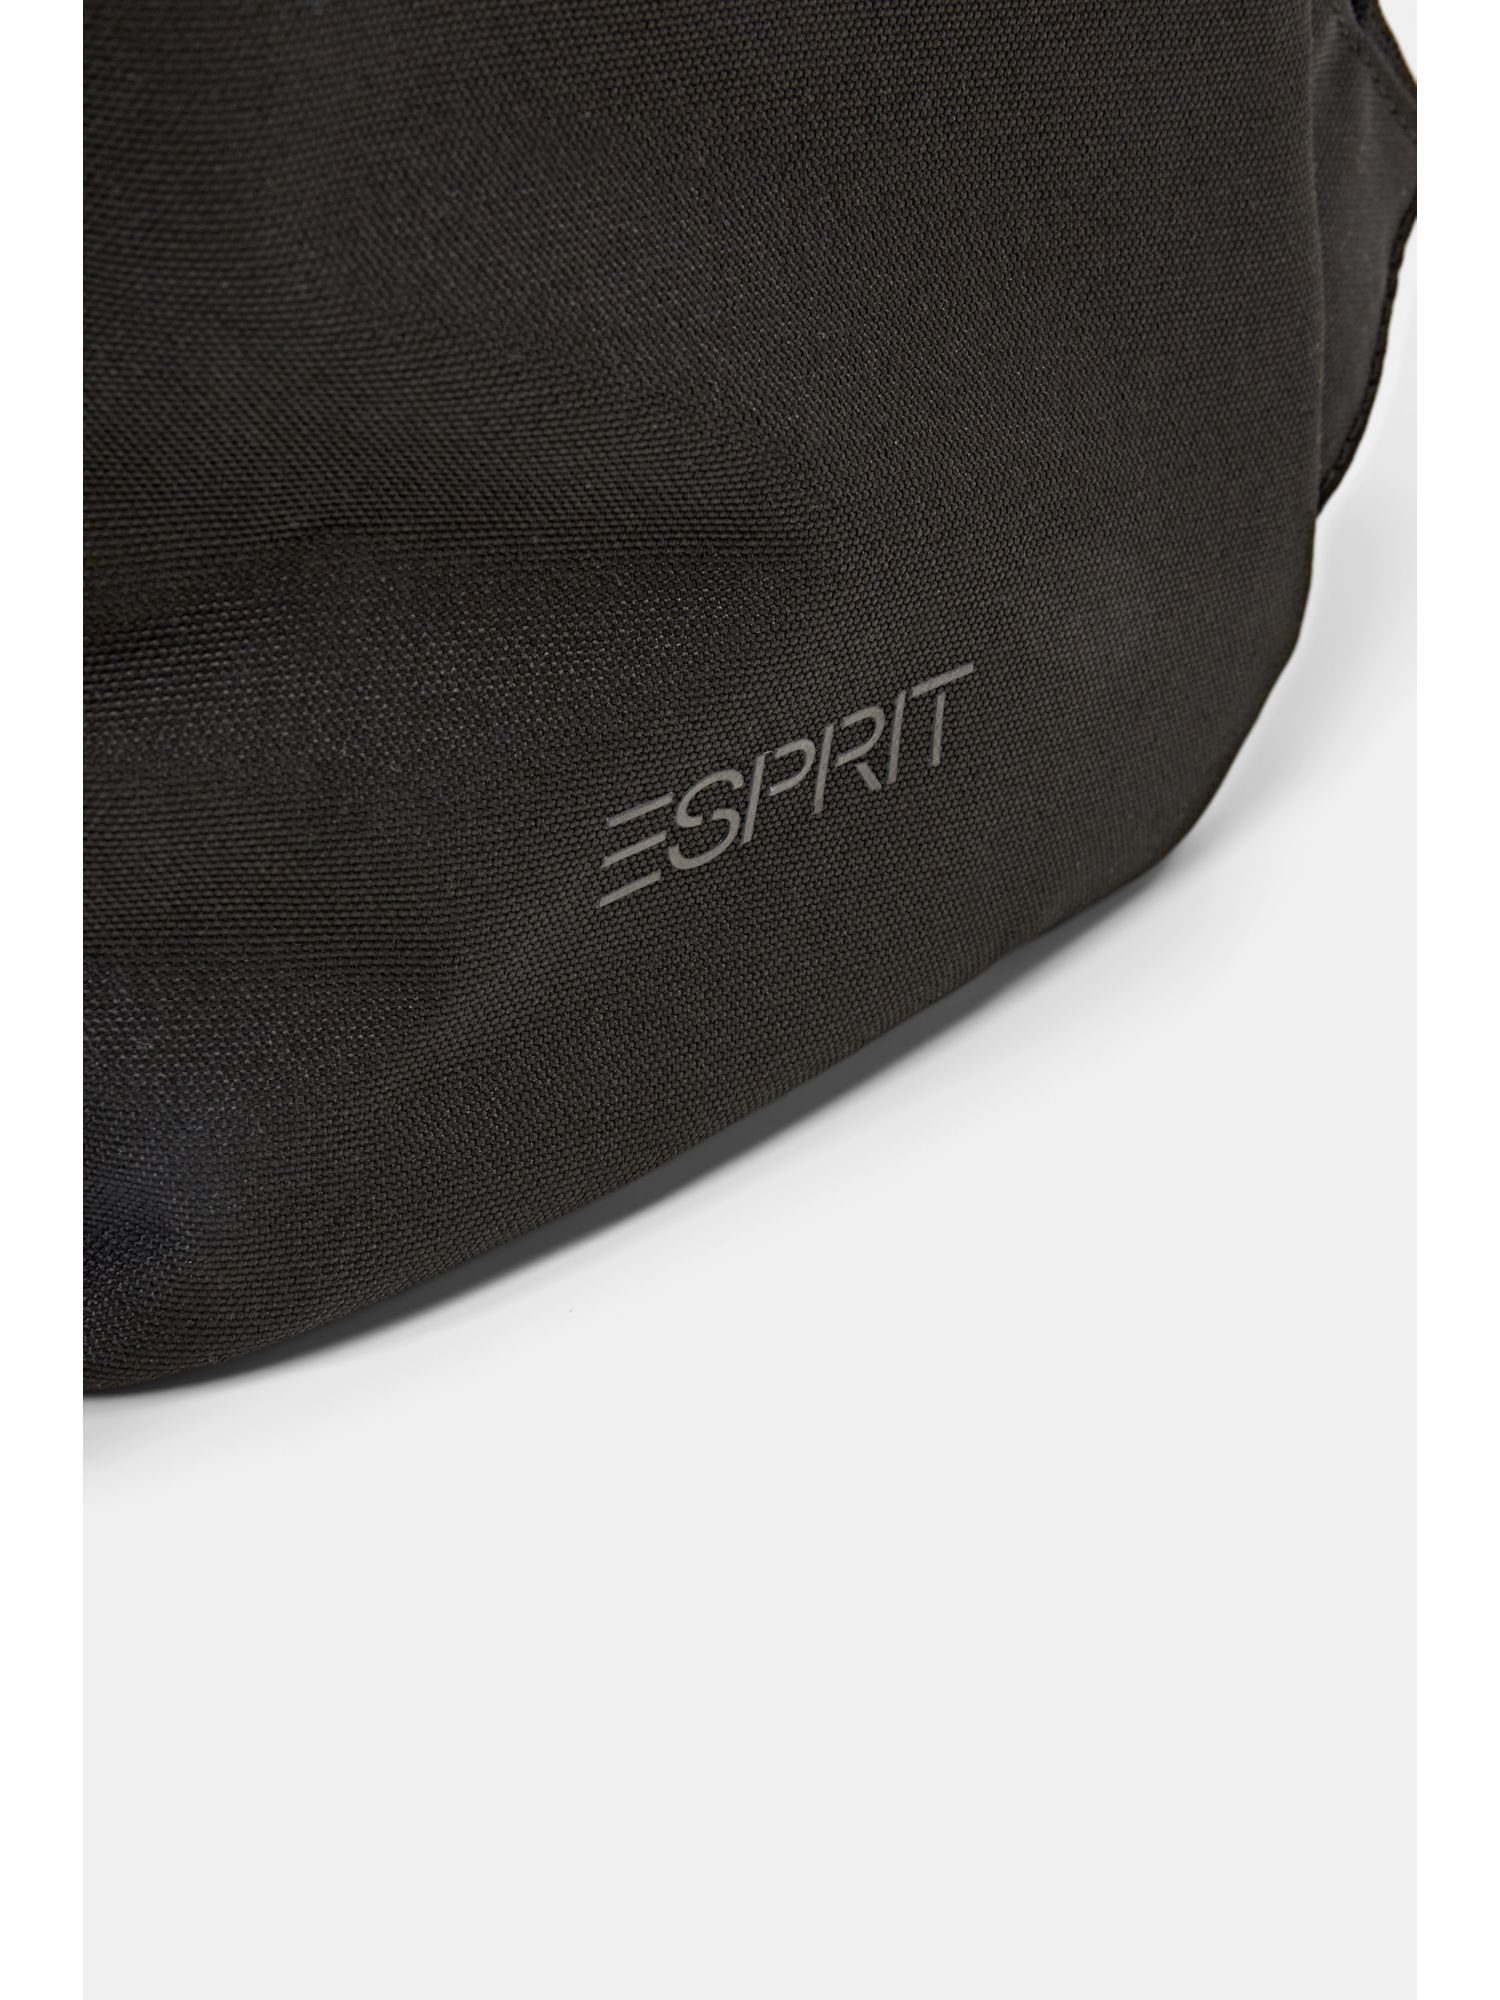 Esprit Rucksack BLACK aus Rucksack Zipperfach mit Webstoff